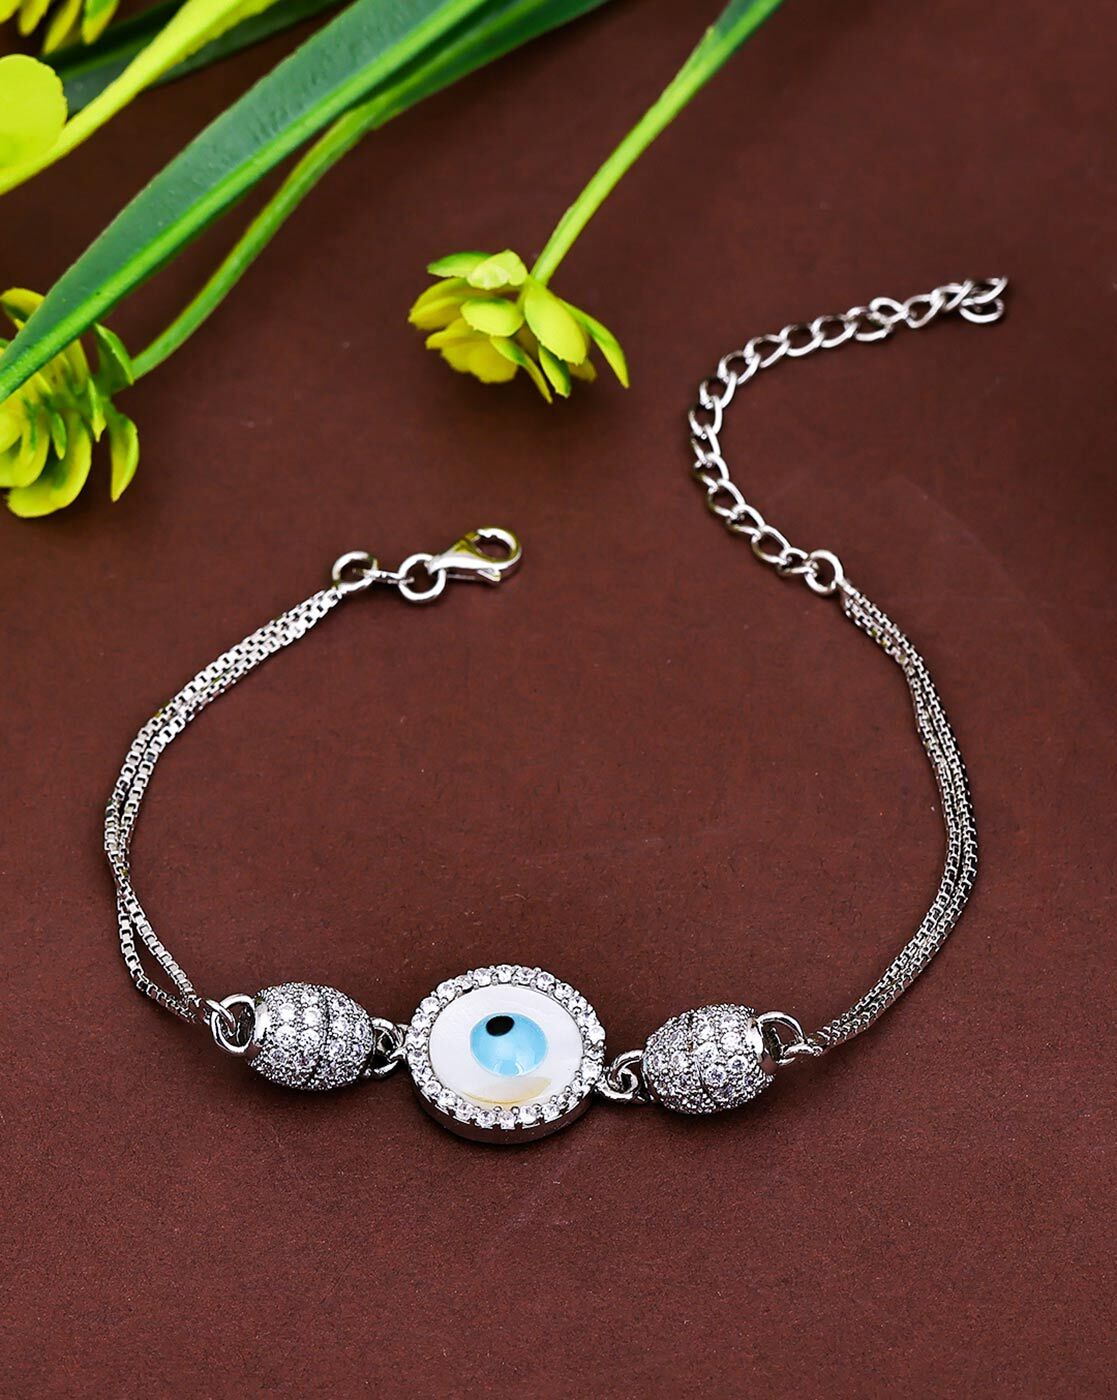 Silver Bracelet  Buy Silver Bracelets Online in India  Myntra